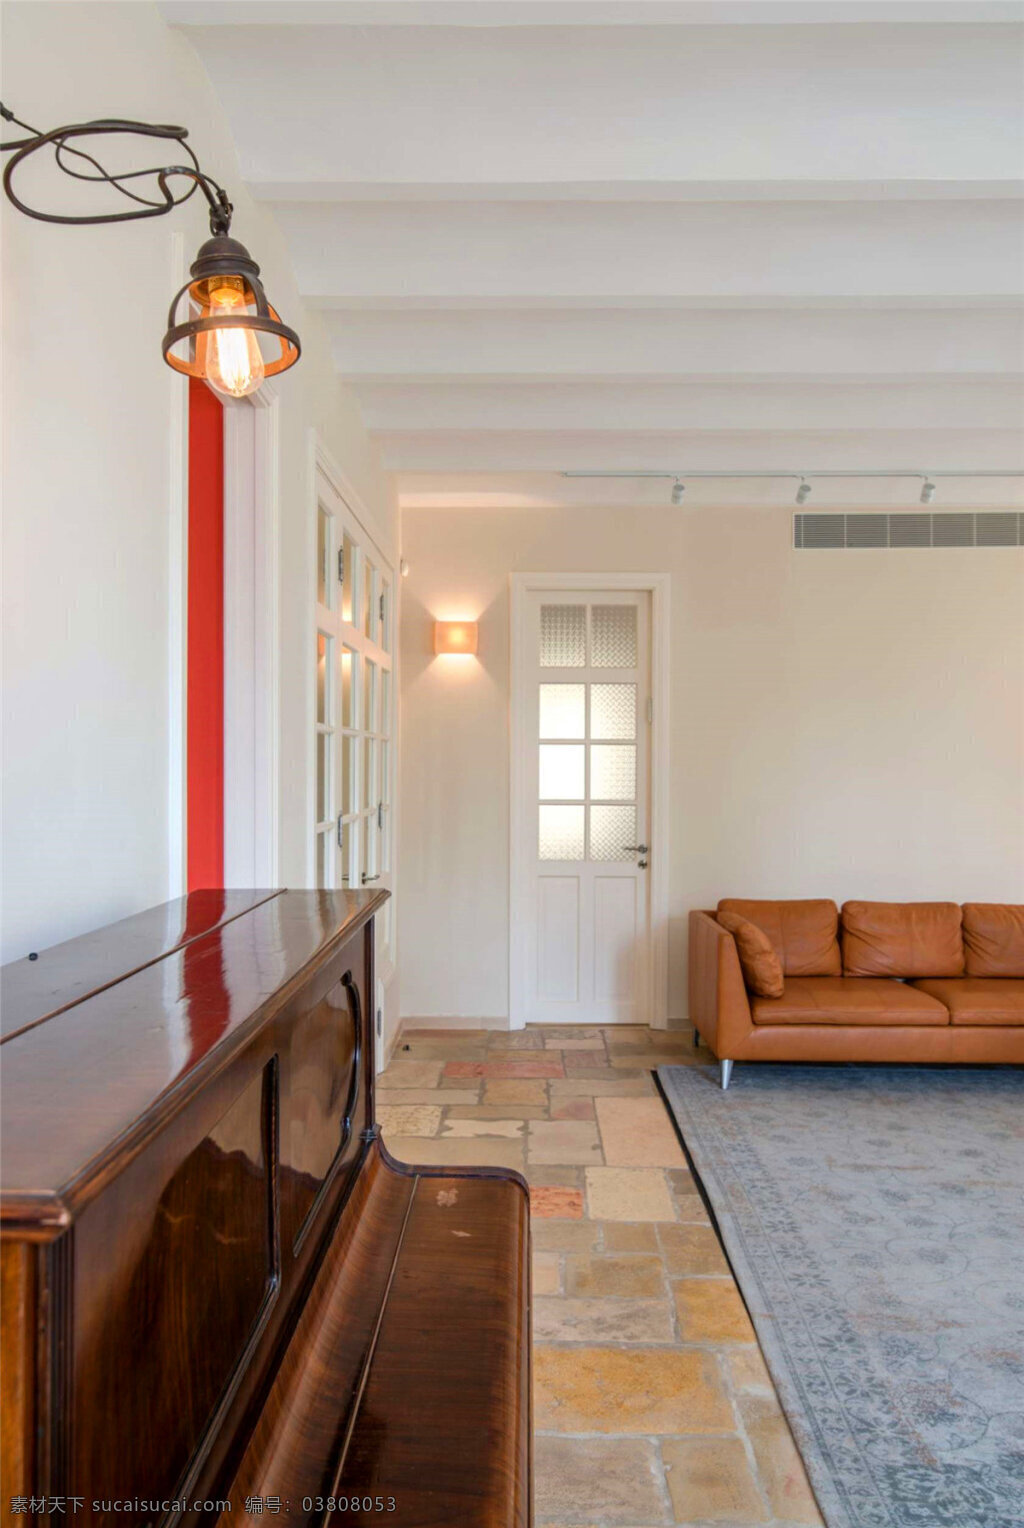 简约 客厅 花色 地板砖 装修 效果图 白色墙壁 壁灯 钢琴 格子吊顶 灰色地毯 台灯